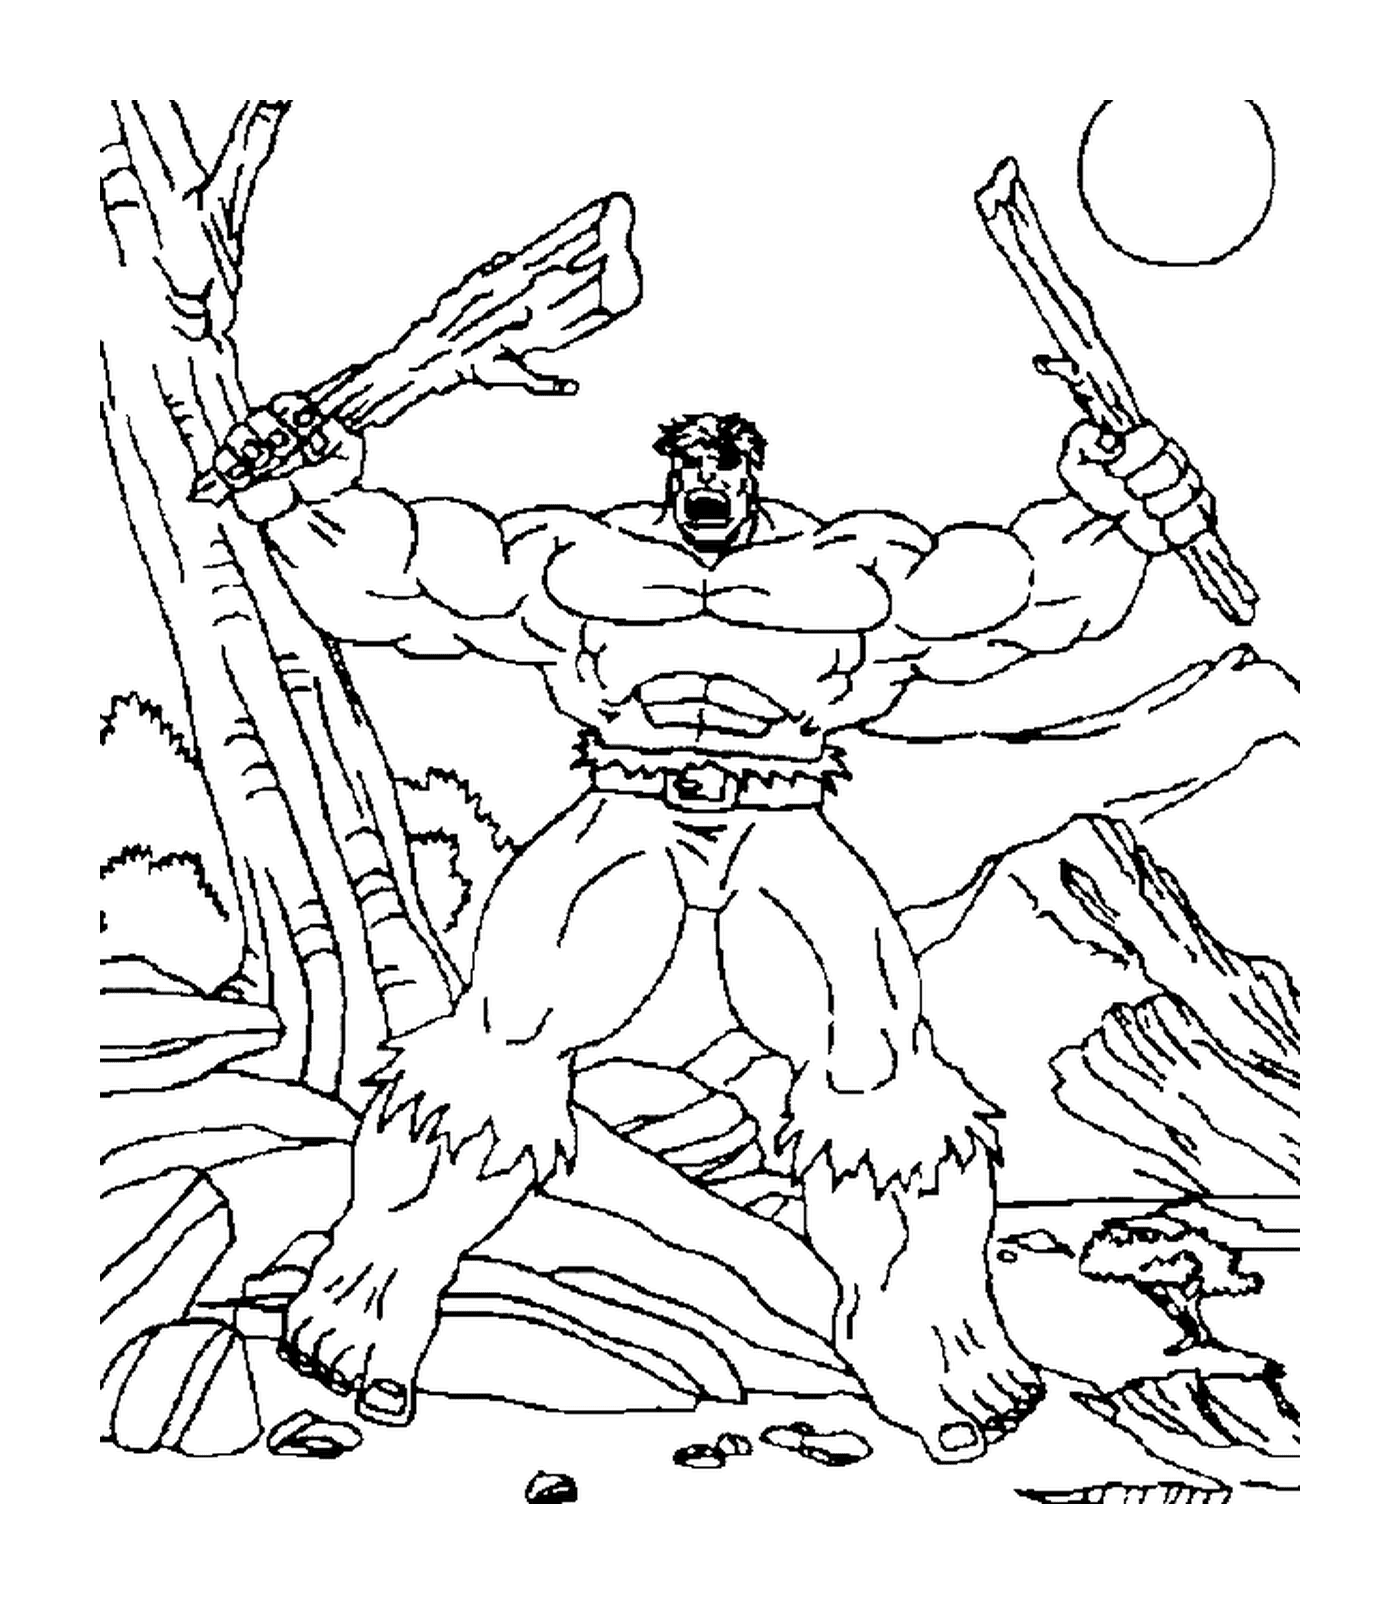  Hulk breaking a branch 